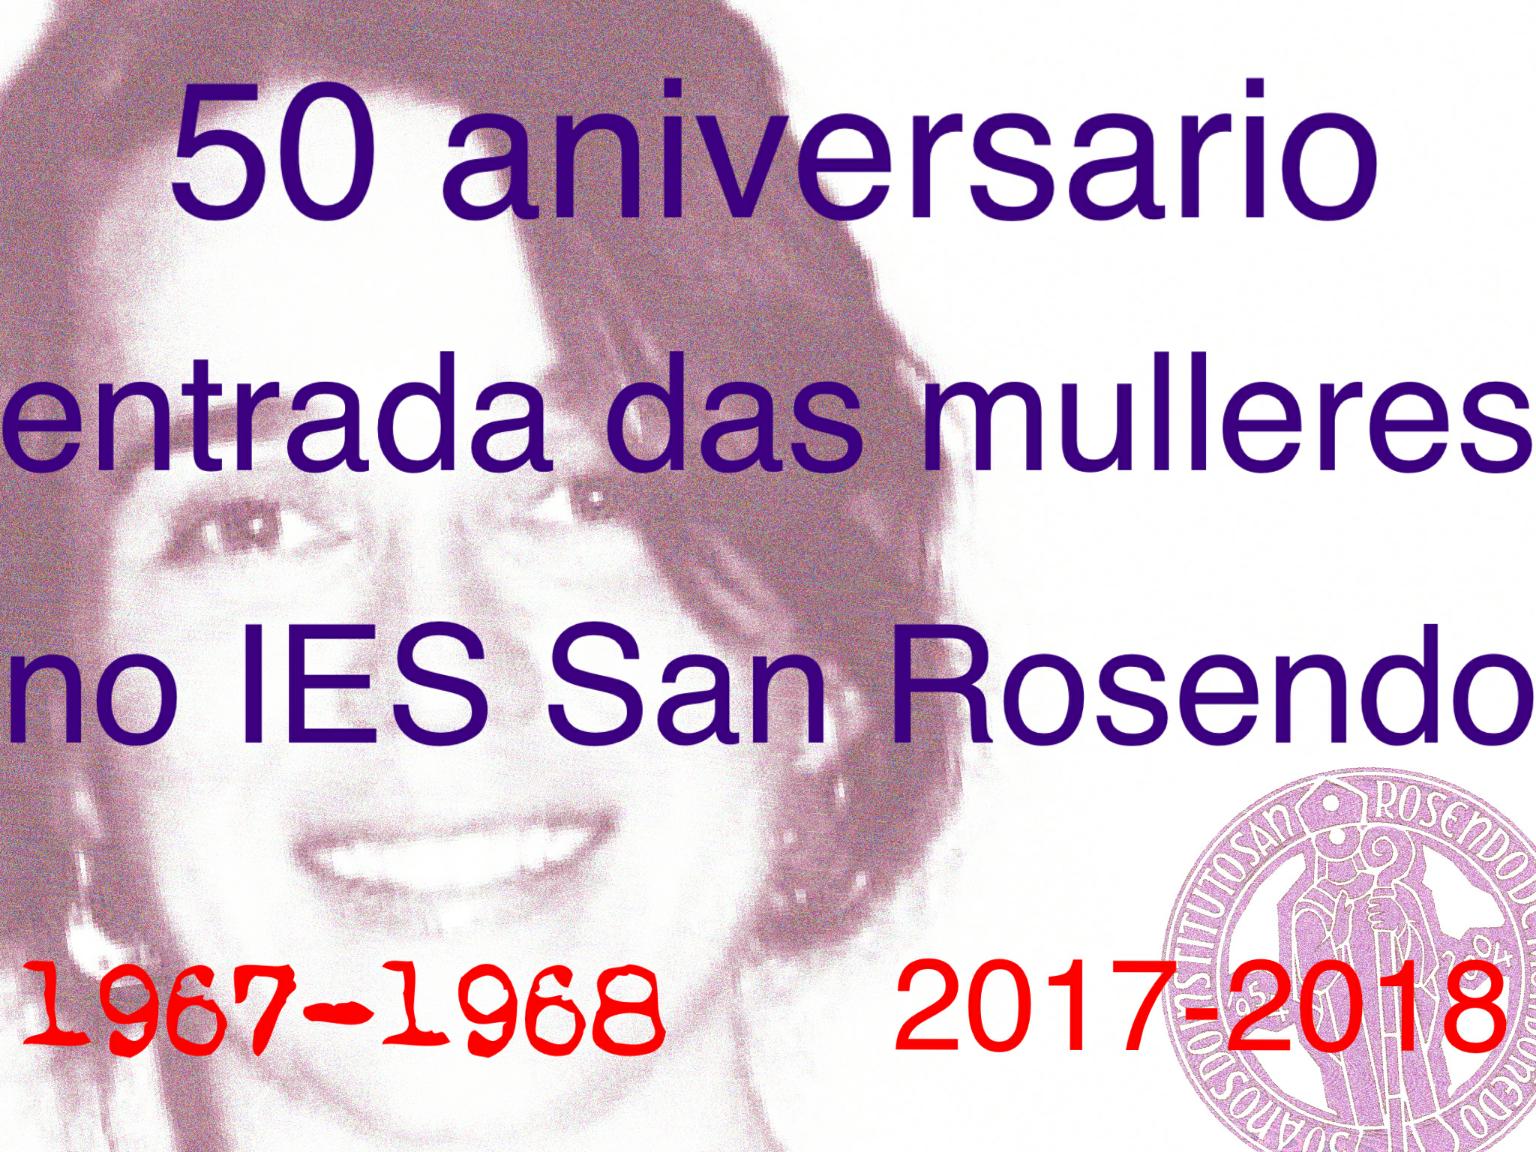 50 aniversario da incorporación das mulleres ao IES San Rosendo